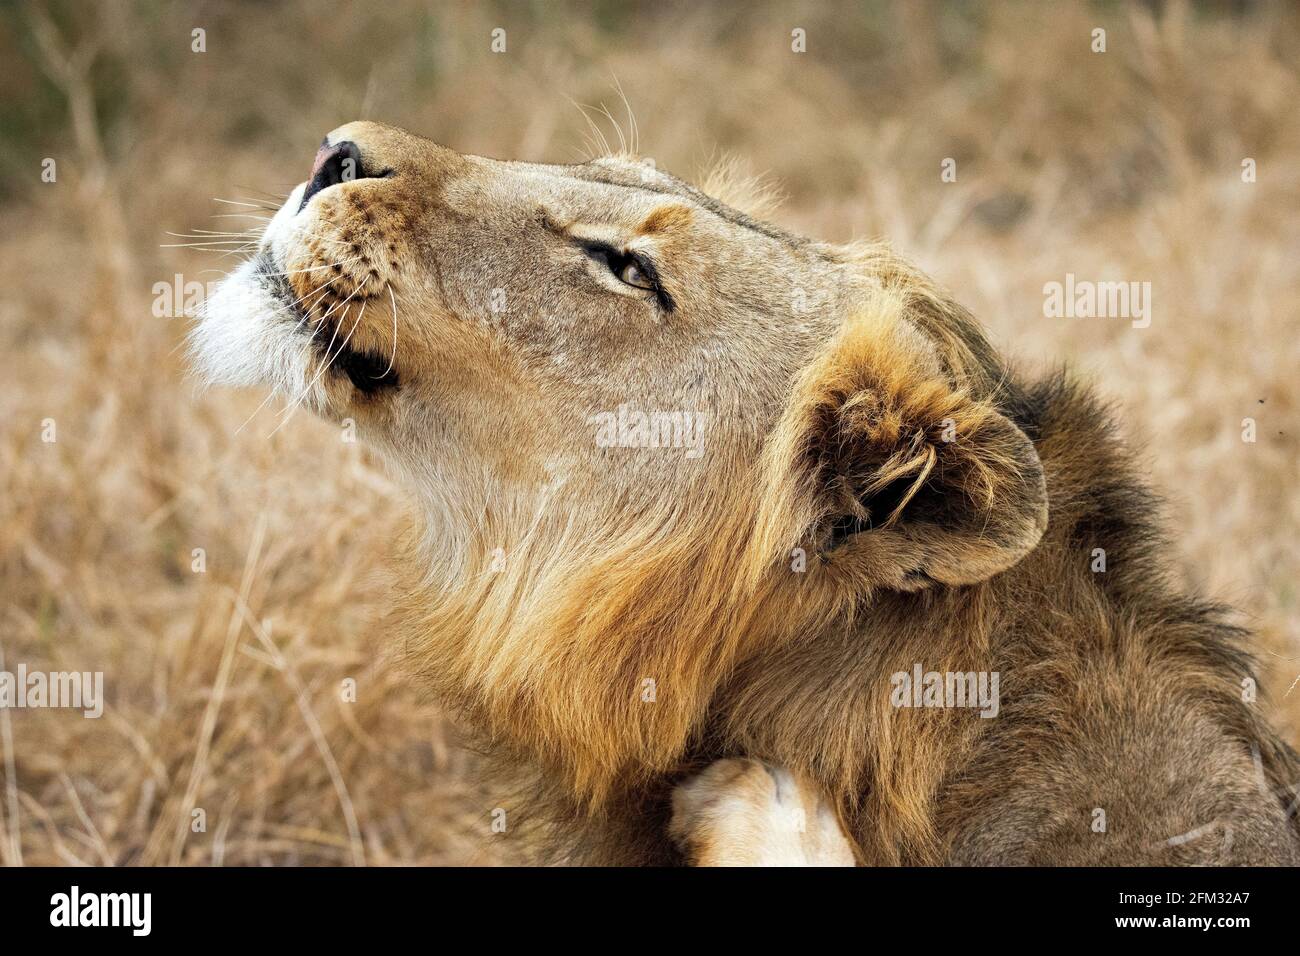 Profil eines Löwen, der im Gras liegt und nach oben schaut, Südafrika Stockfoto